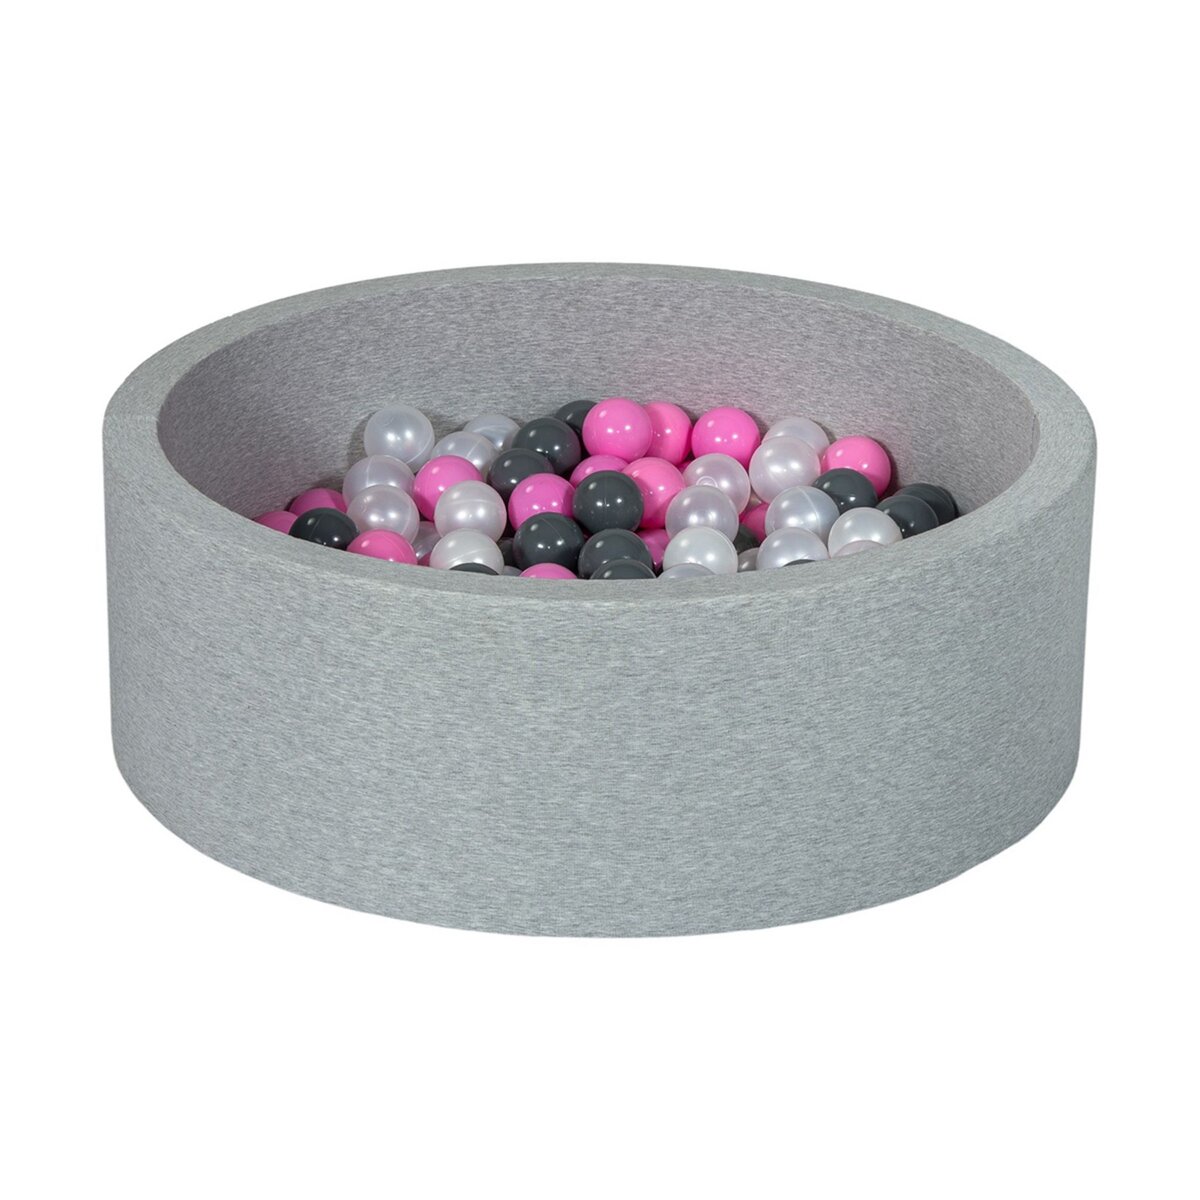  Piscine à balles Aire de jeu + 150 balles perle, rose clair, gris